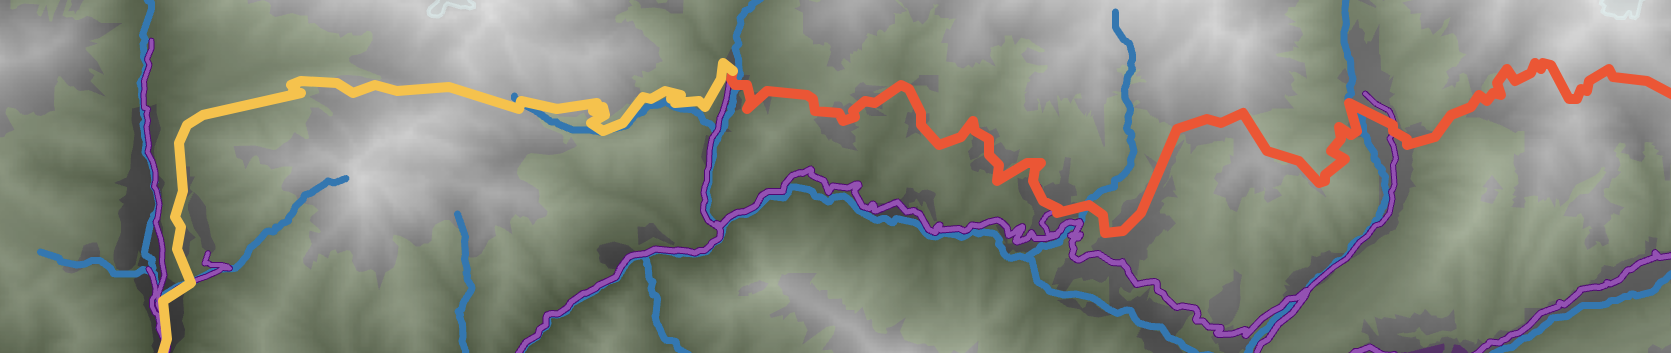 Una captura de pantalla corta y ancha del mapa interactivo del Camino Transcaucásico, mostrando dos secciones del sendero (una roja, una naranja), así como carreteras (morado) y ríos (azul) en un mapa base hipsométrico de blanco a negro, con vegetación mostrada como una superposición verde transparente.